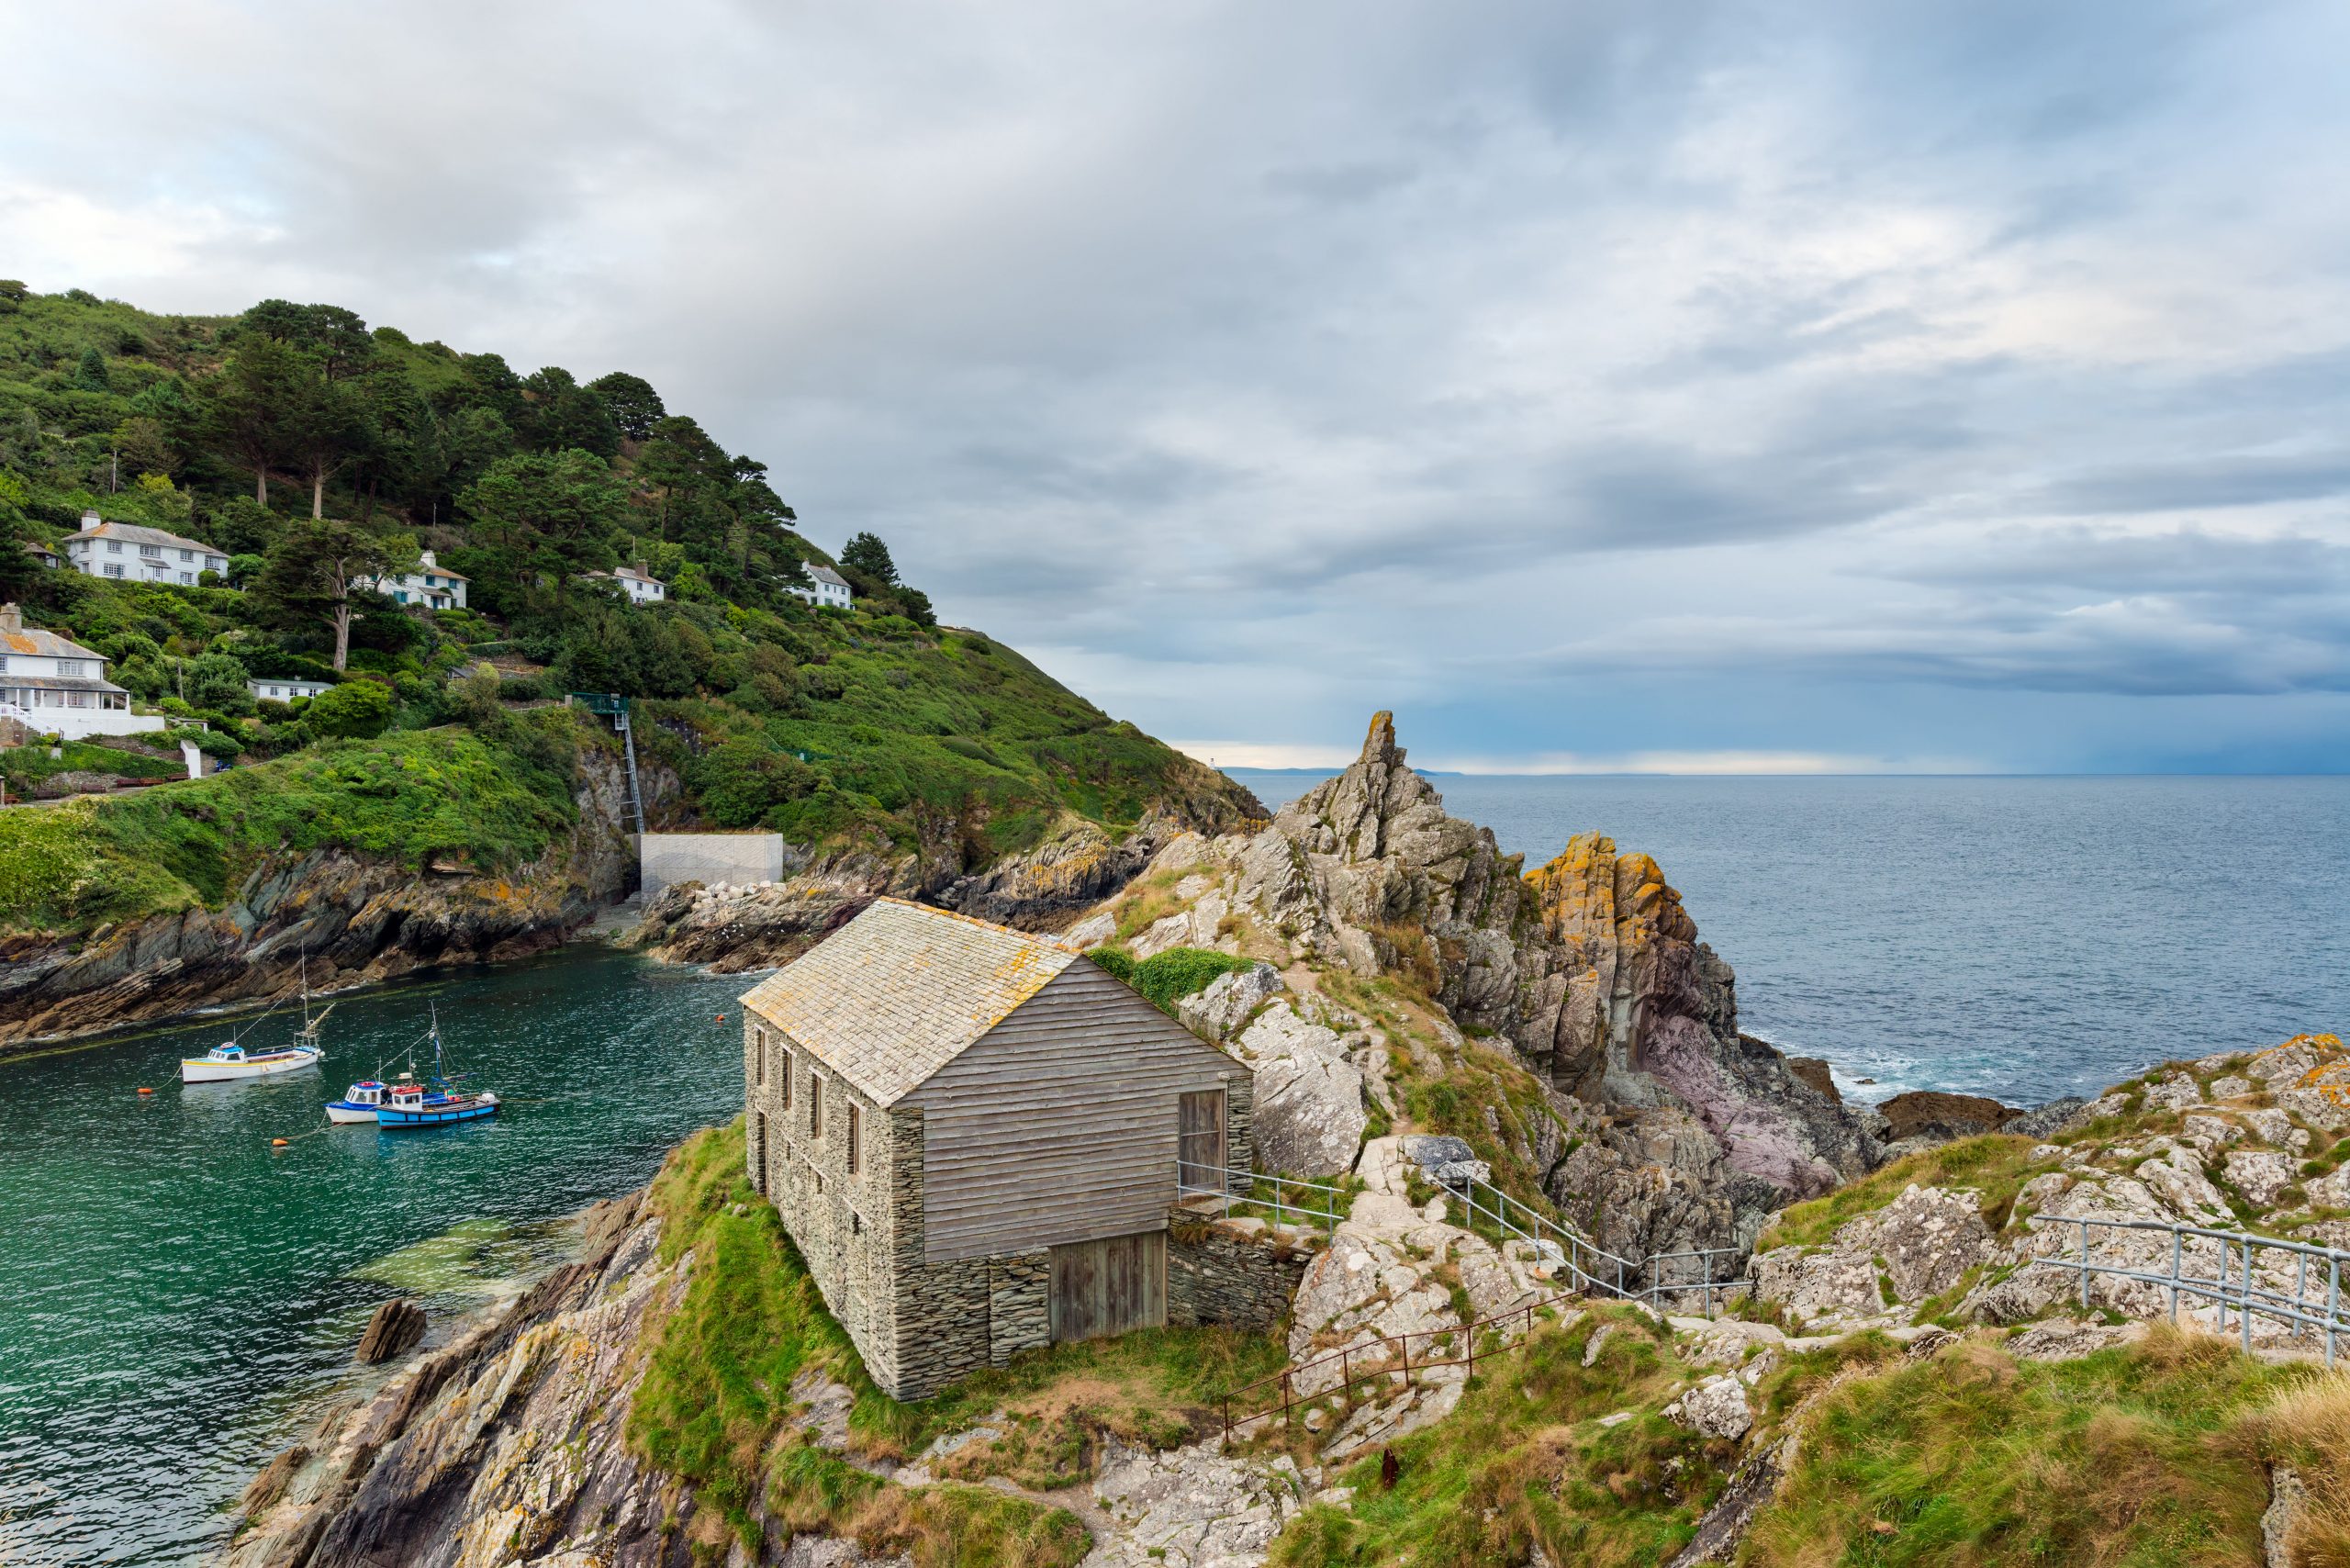 Moraira, elegido como uno de los pueblos costeros más atractivos de Europa, según Jetcost